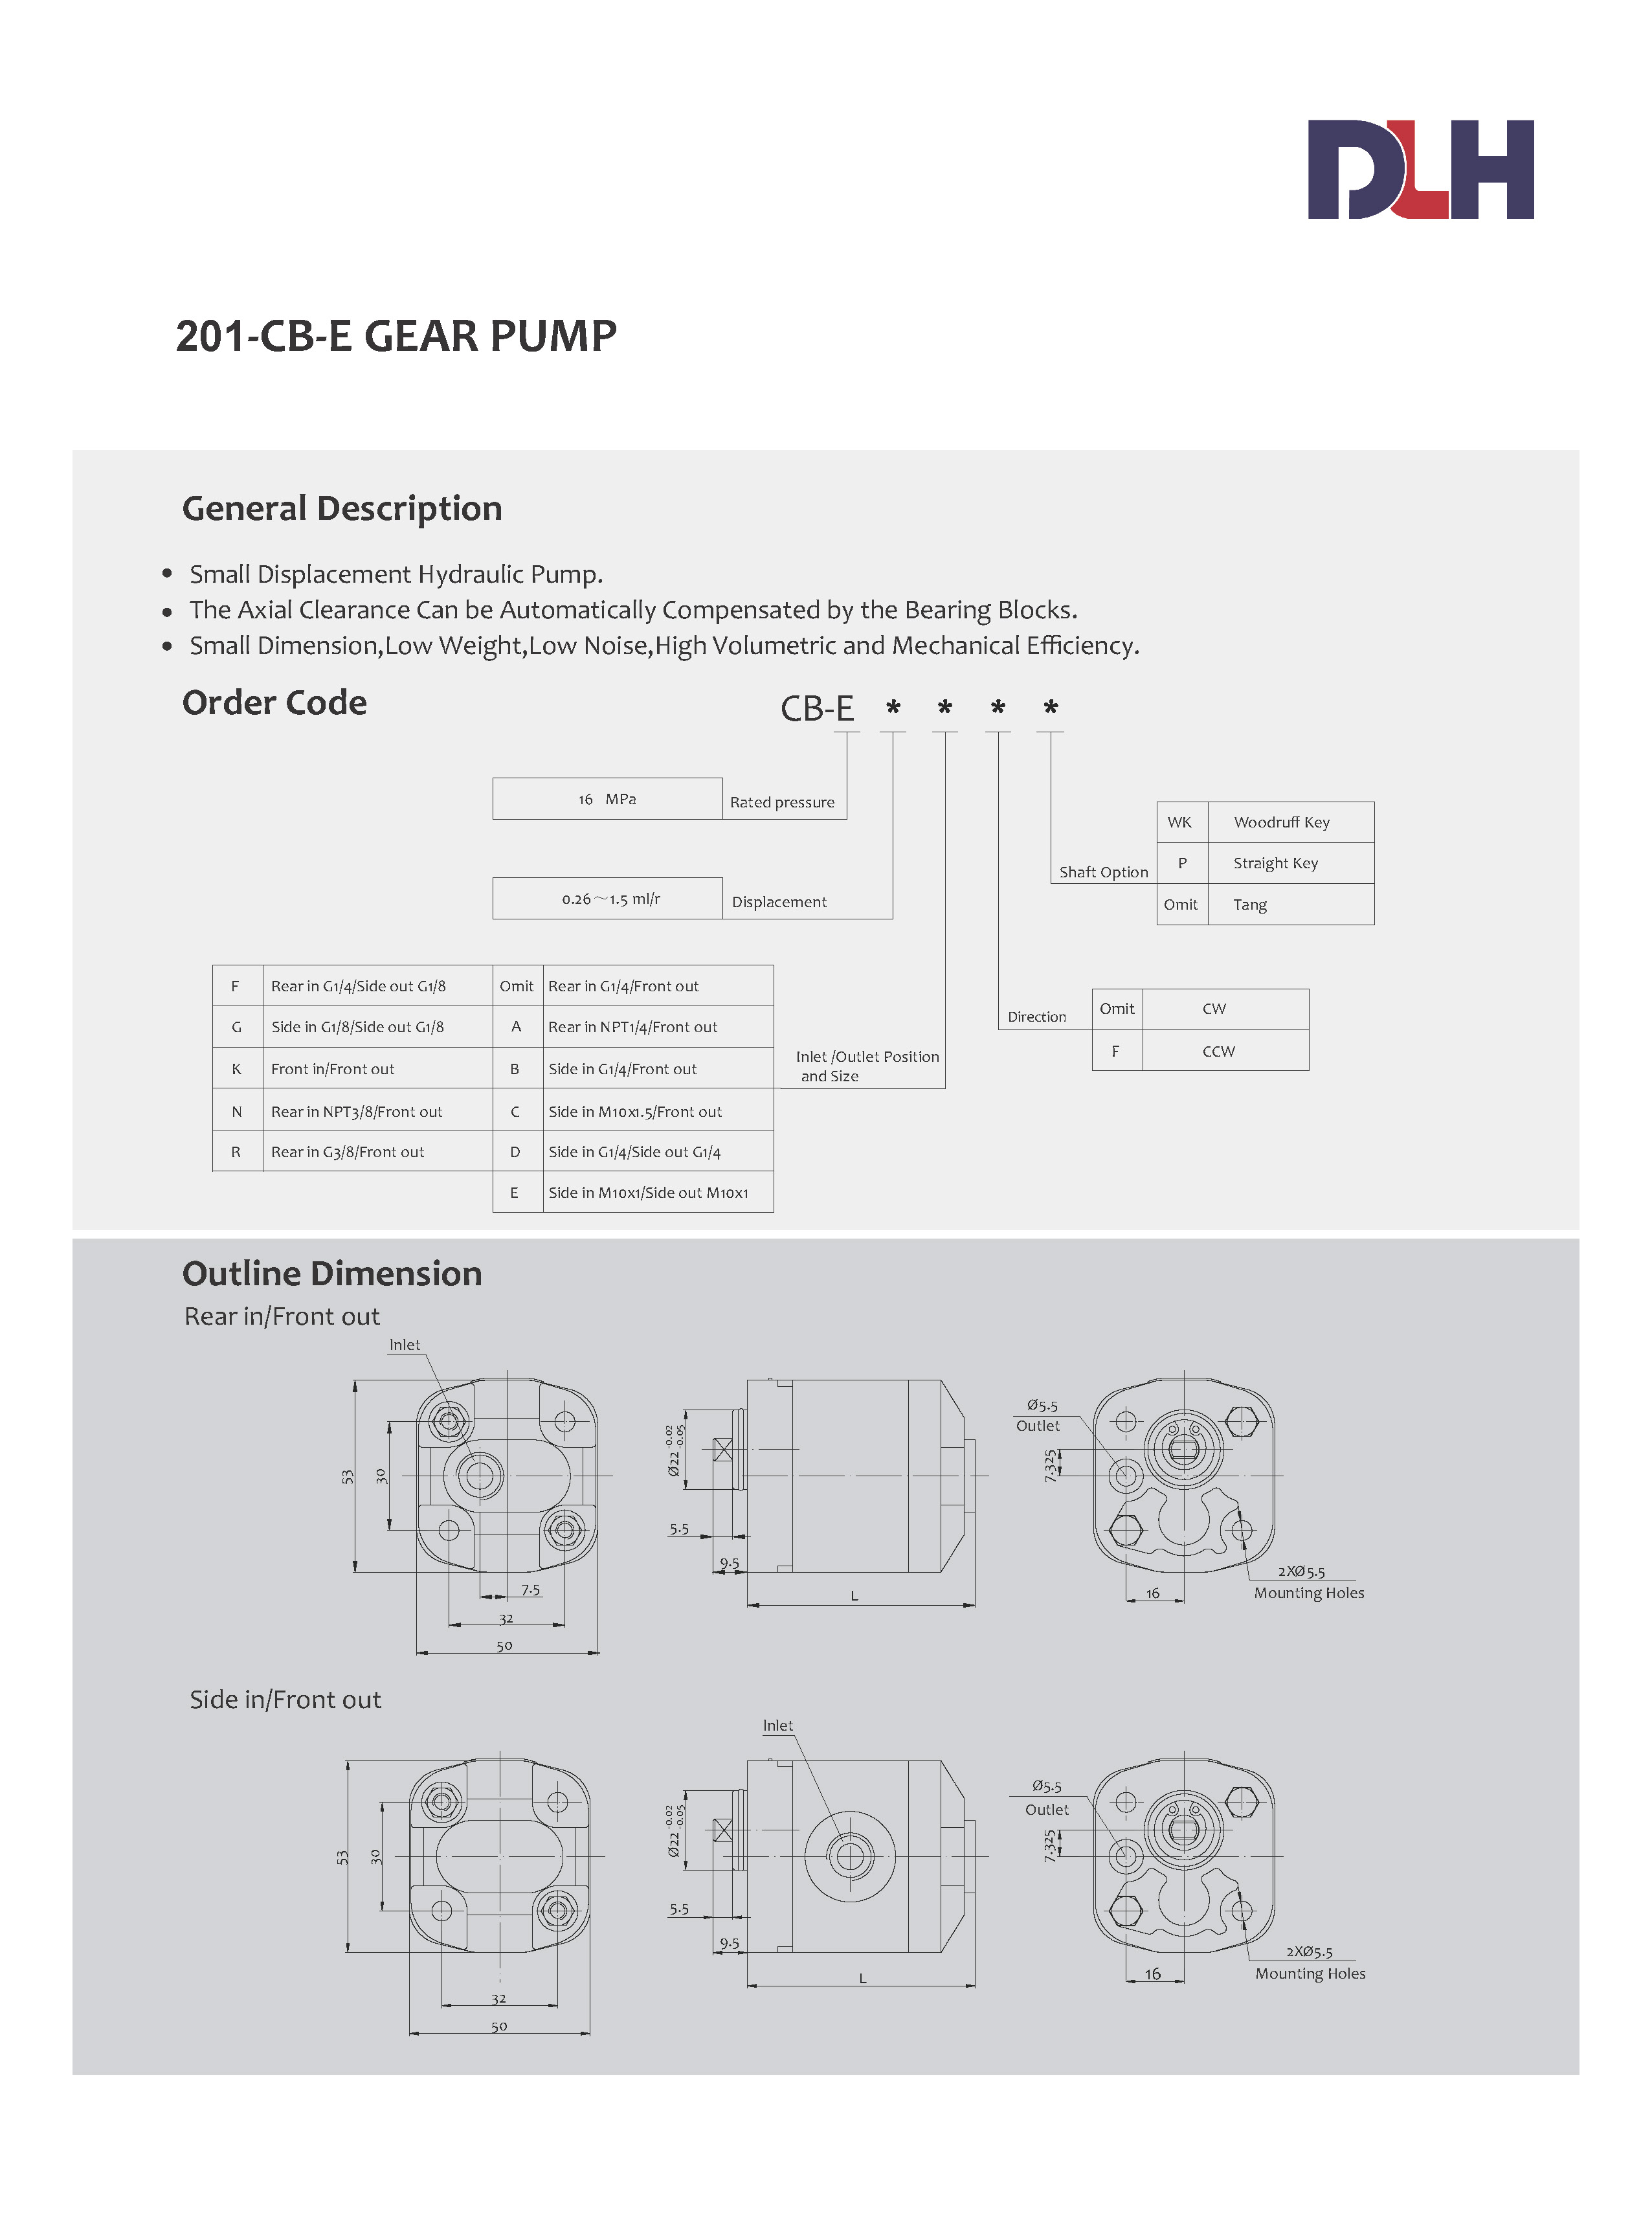 CB-E Gear Pumps